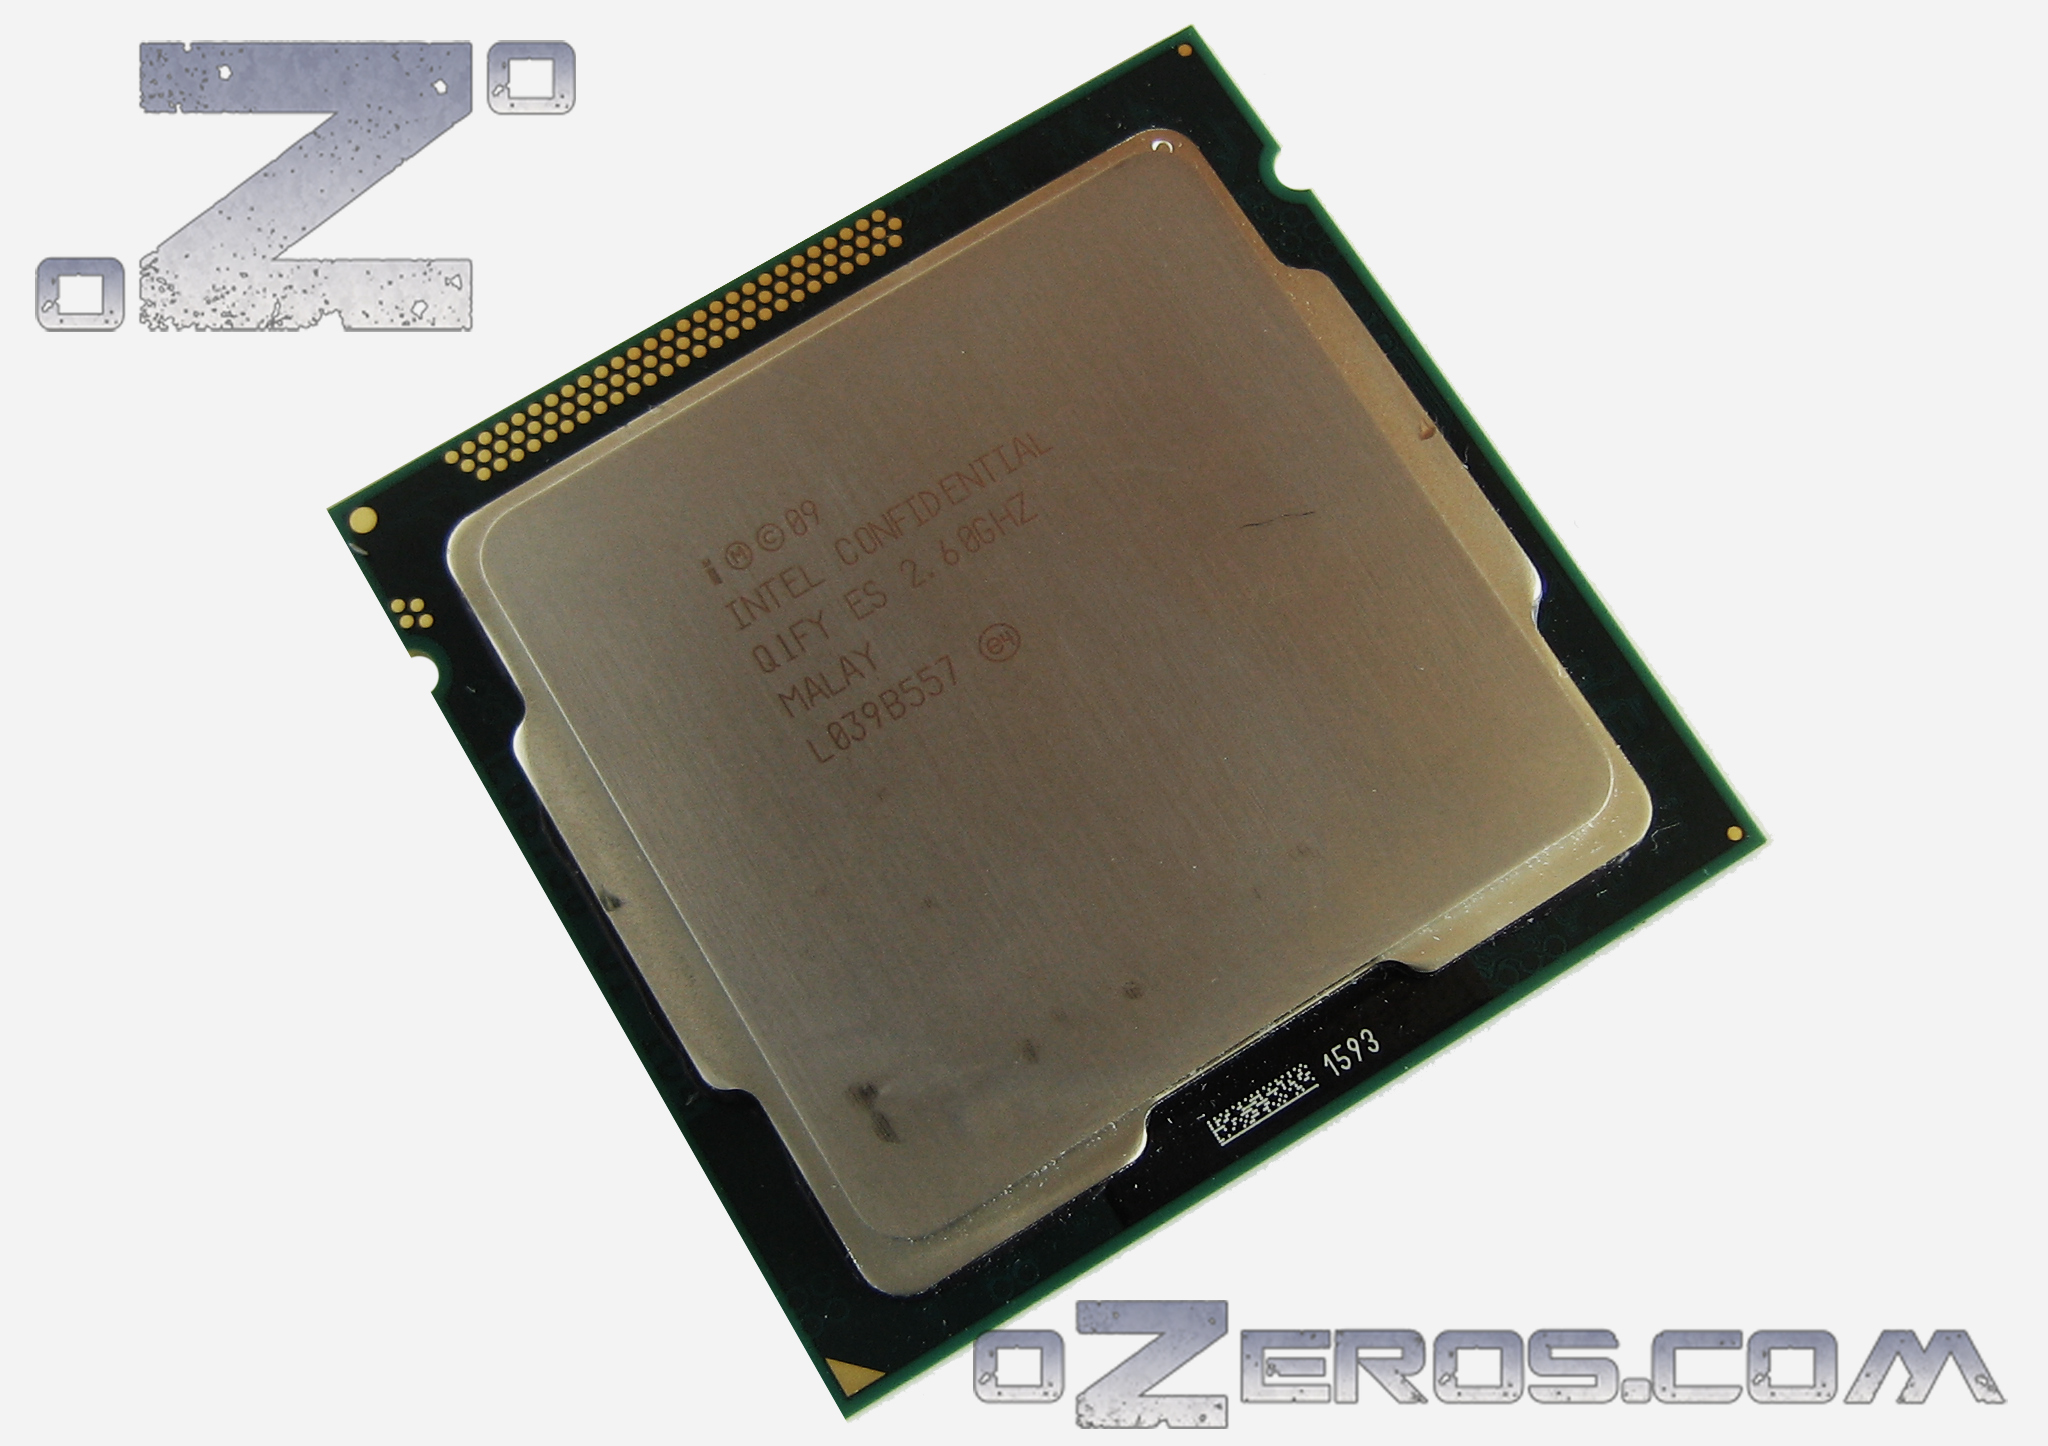 knal Nageslacht cent Review: Intel Pentium G620 | OZEROS